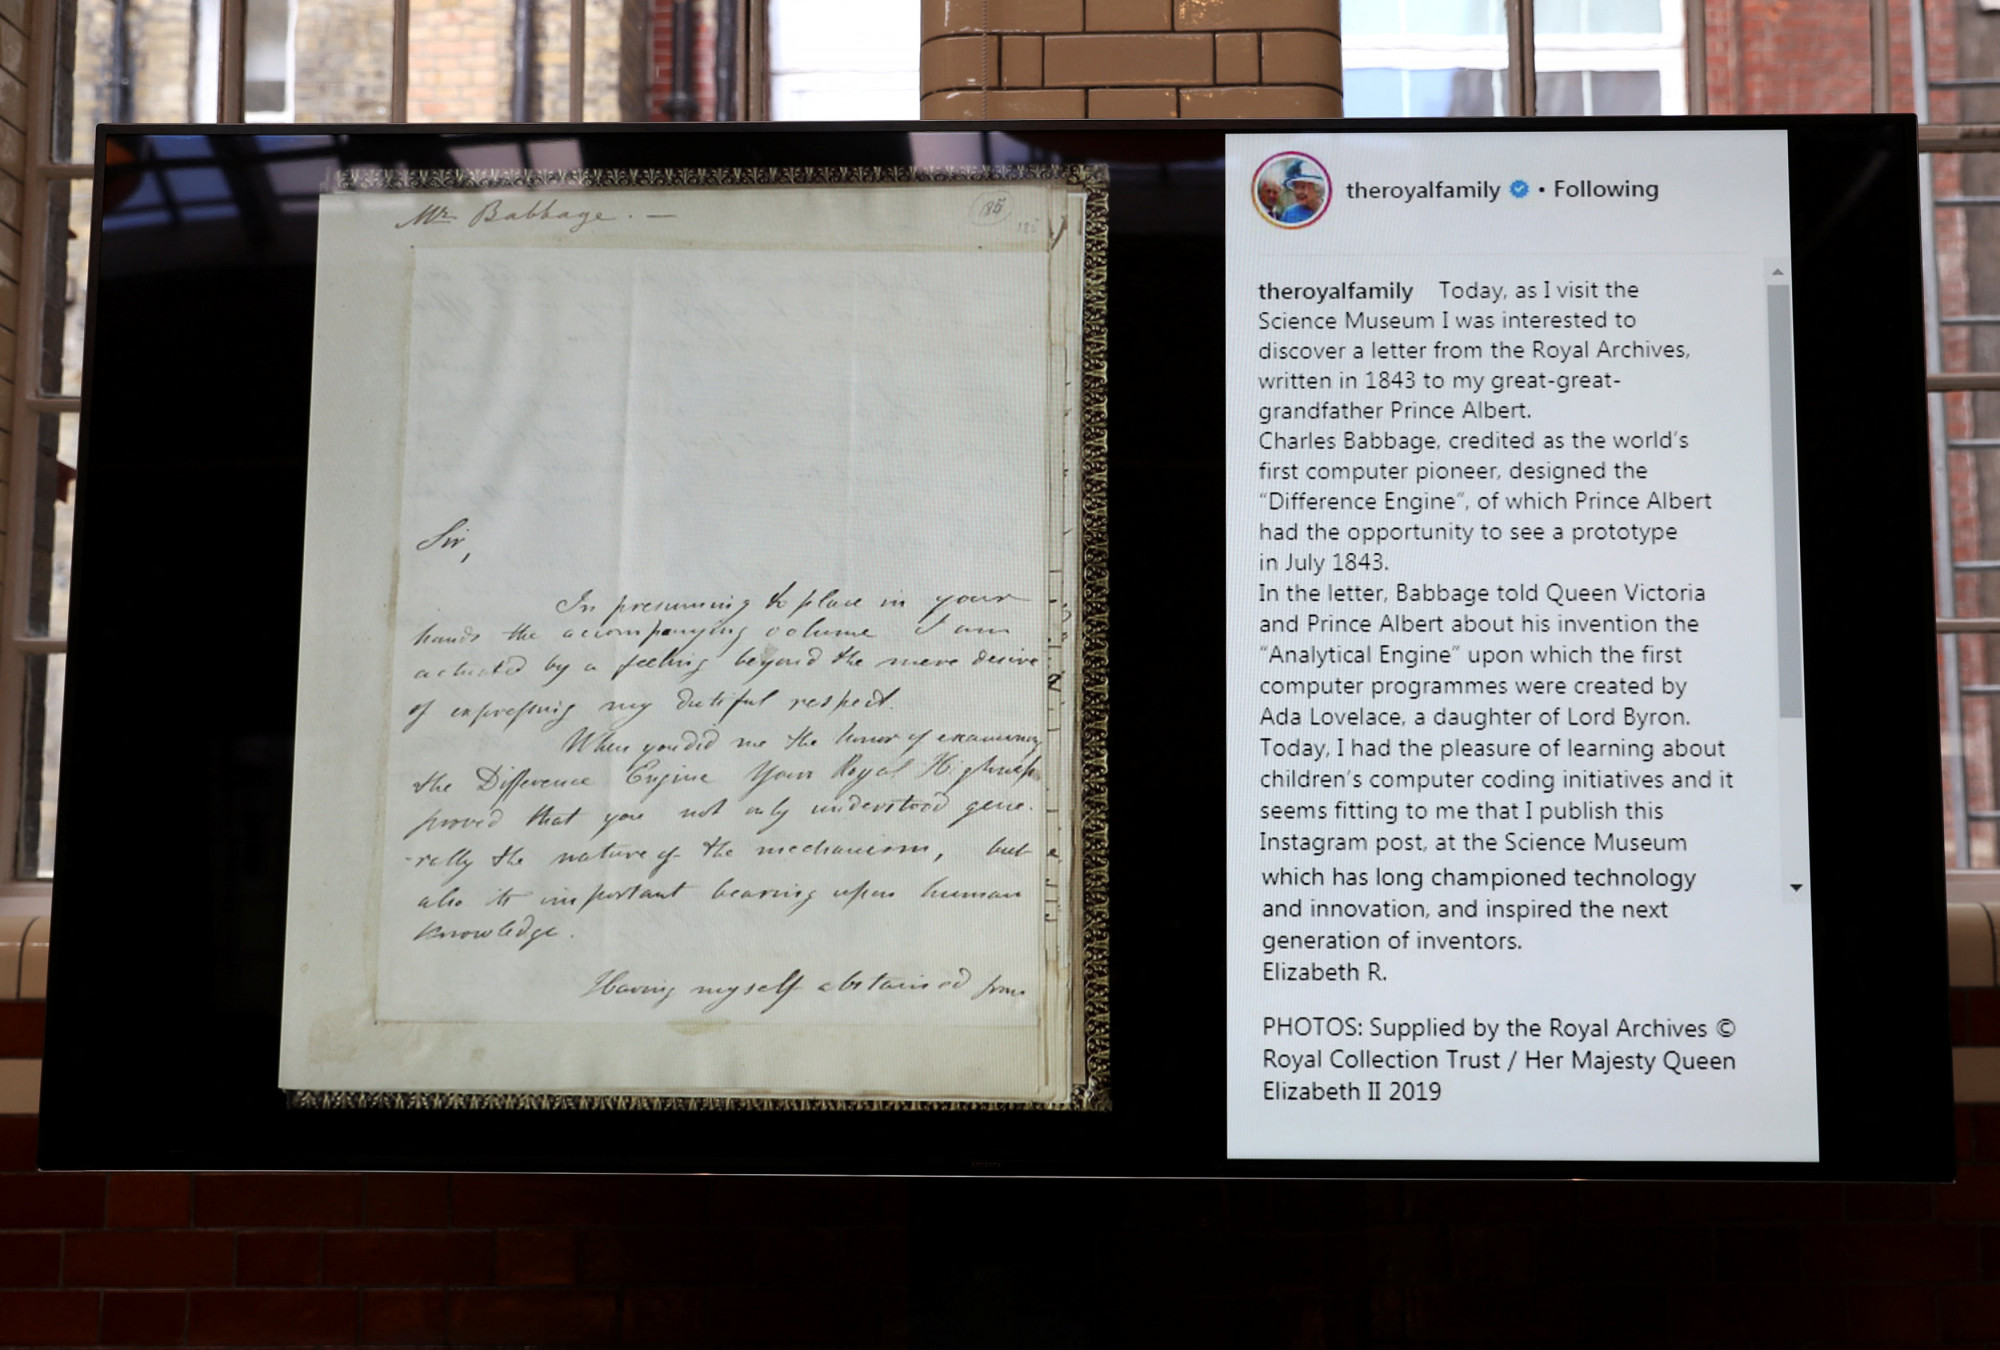 Az eredeti levél és a róla szóló Insta-poszt II. Erzsébettől